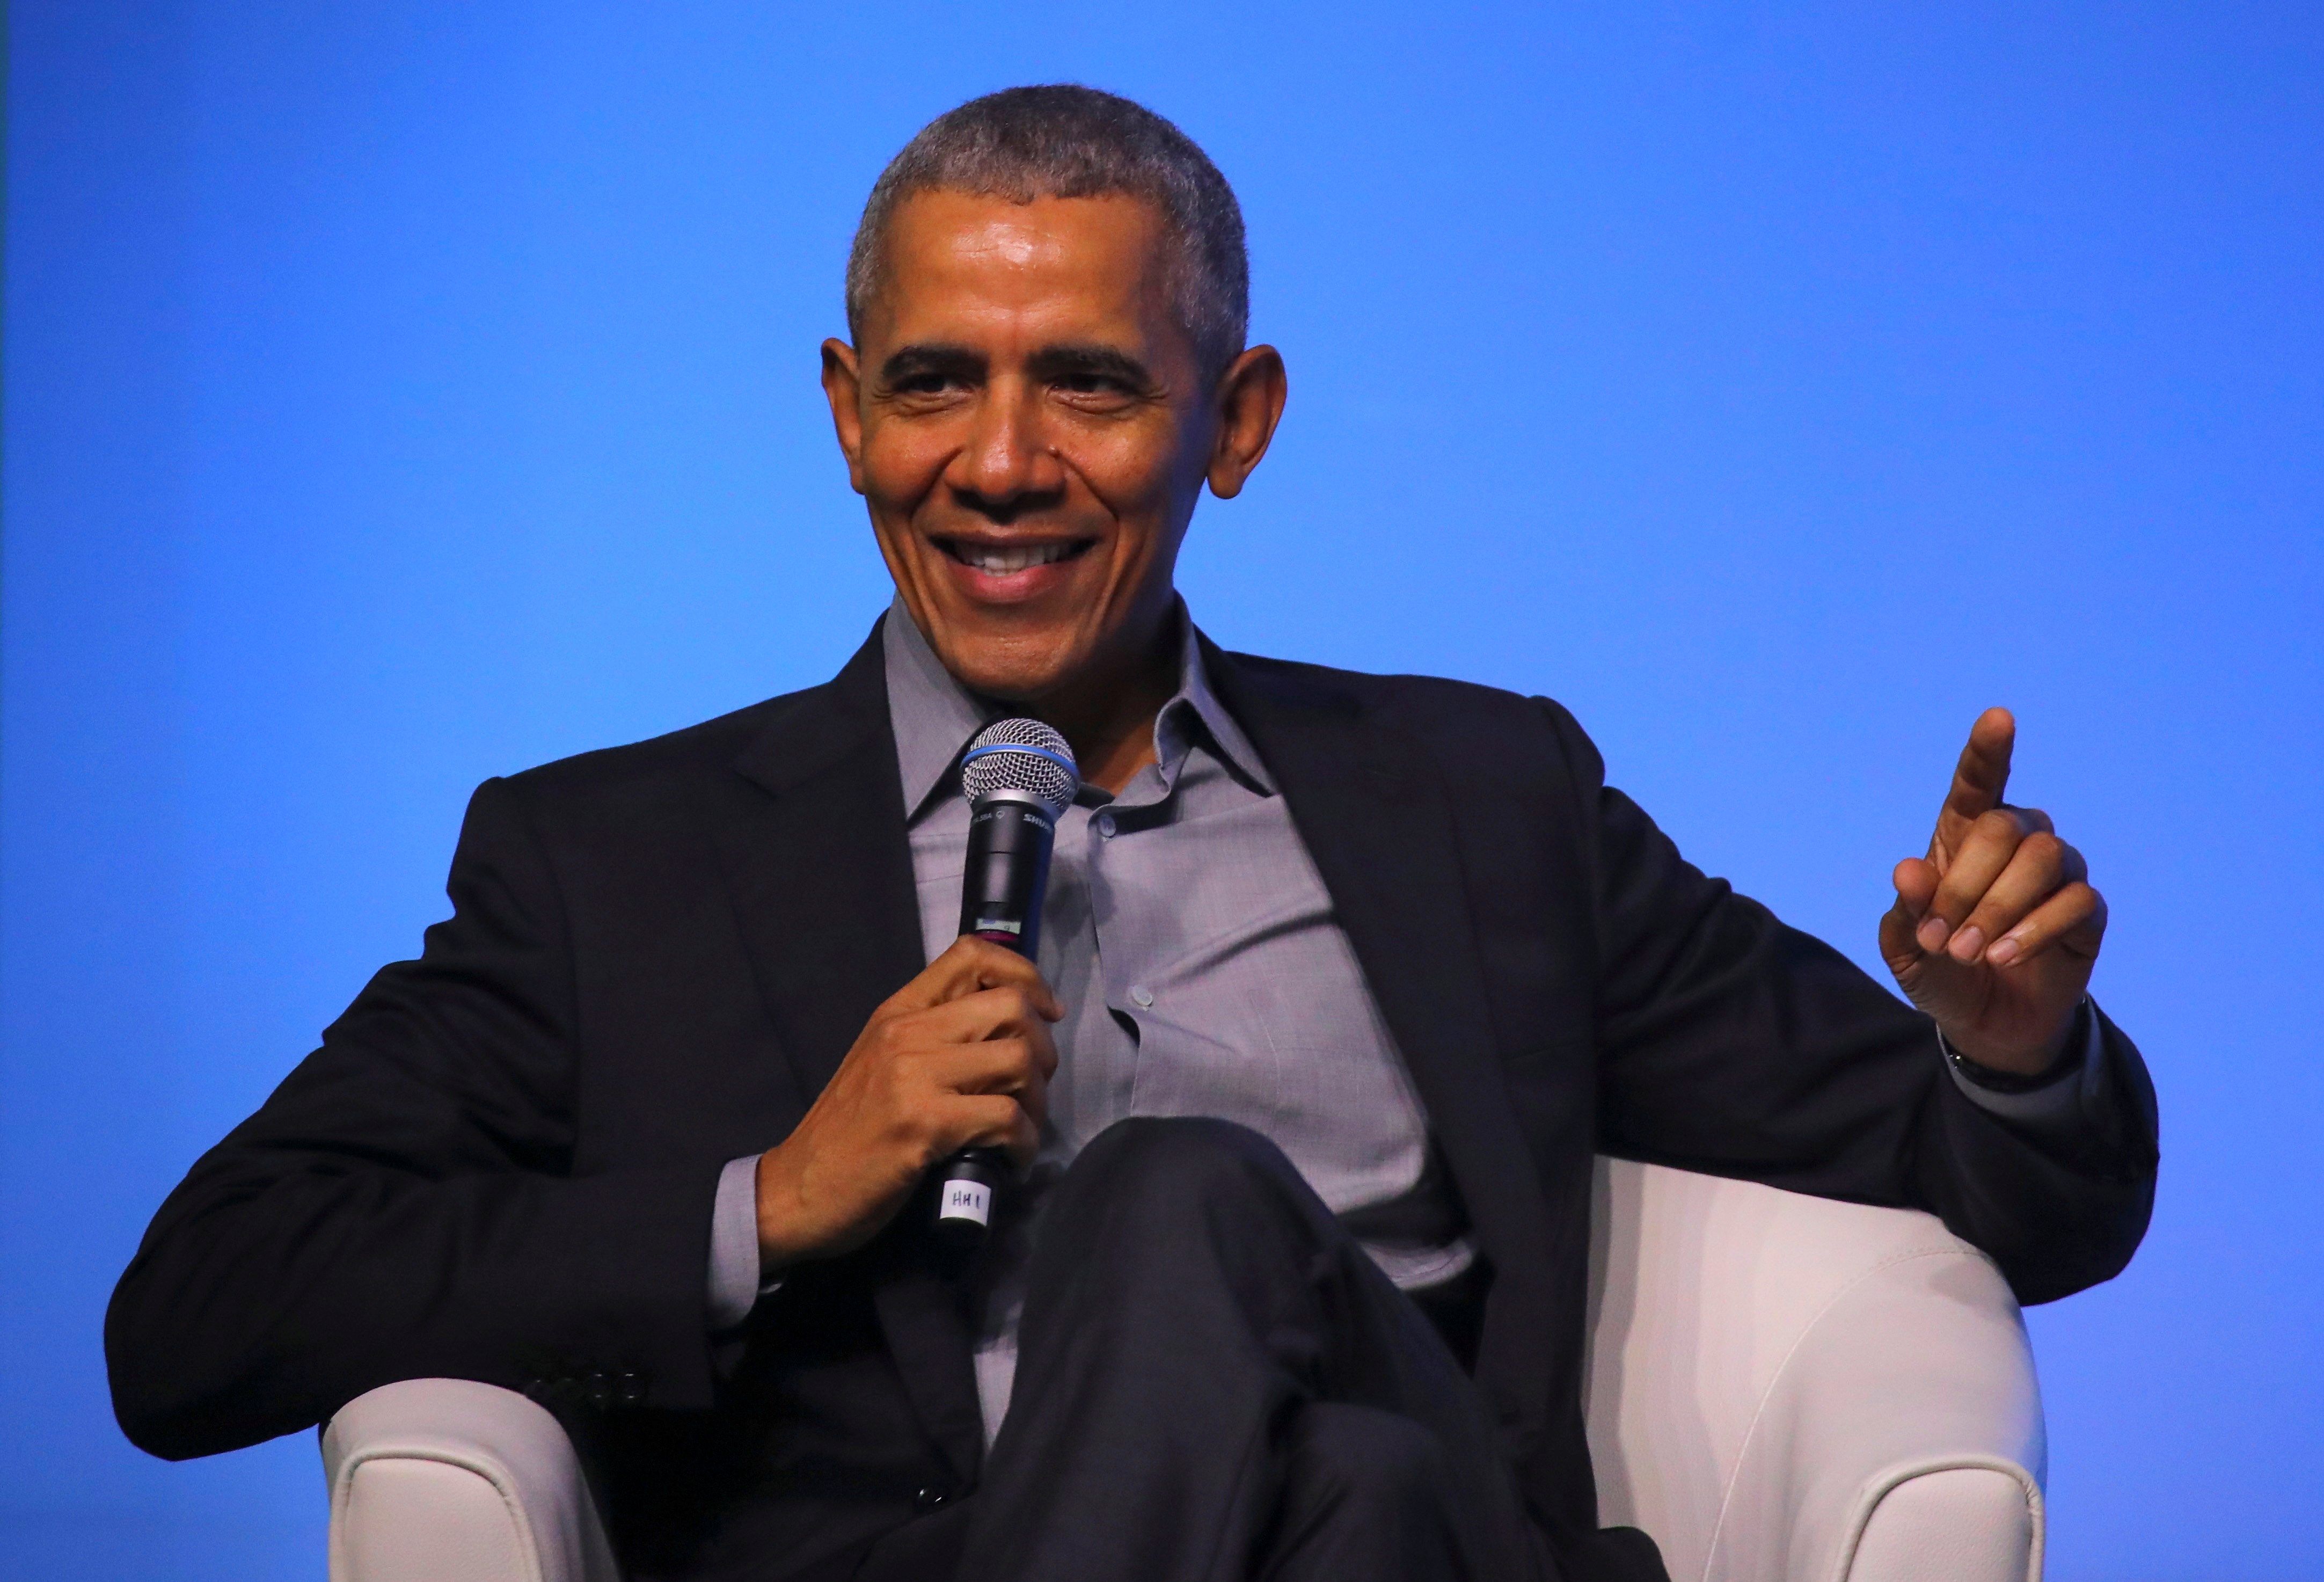 El ex presidente estadounidense Barack Obama habla en el escenario en un evento de la Fundación Obama en Kuala Lumpur, Malasia, el 13 de diciembre de 2019.  (Foto Prensa Libre: EFE)